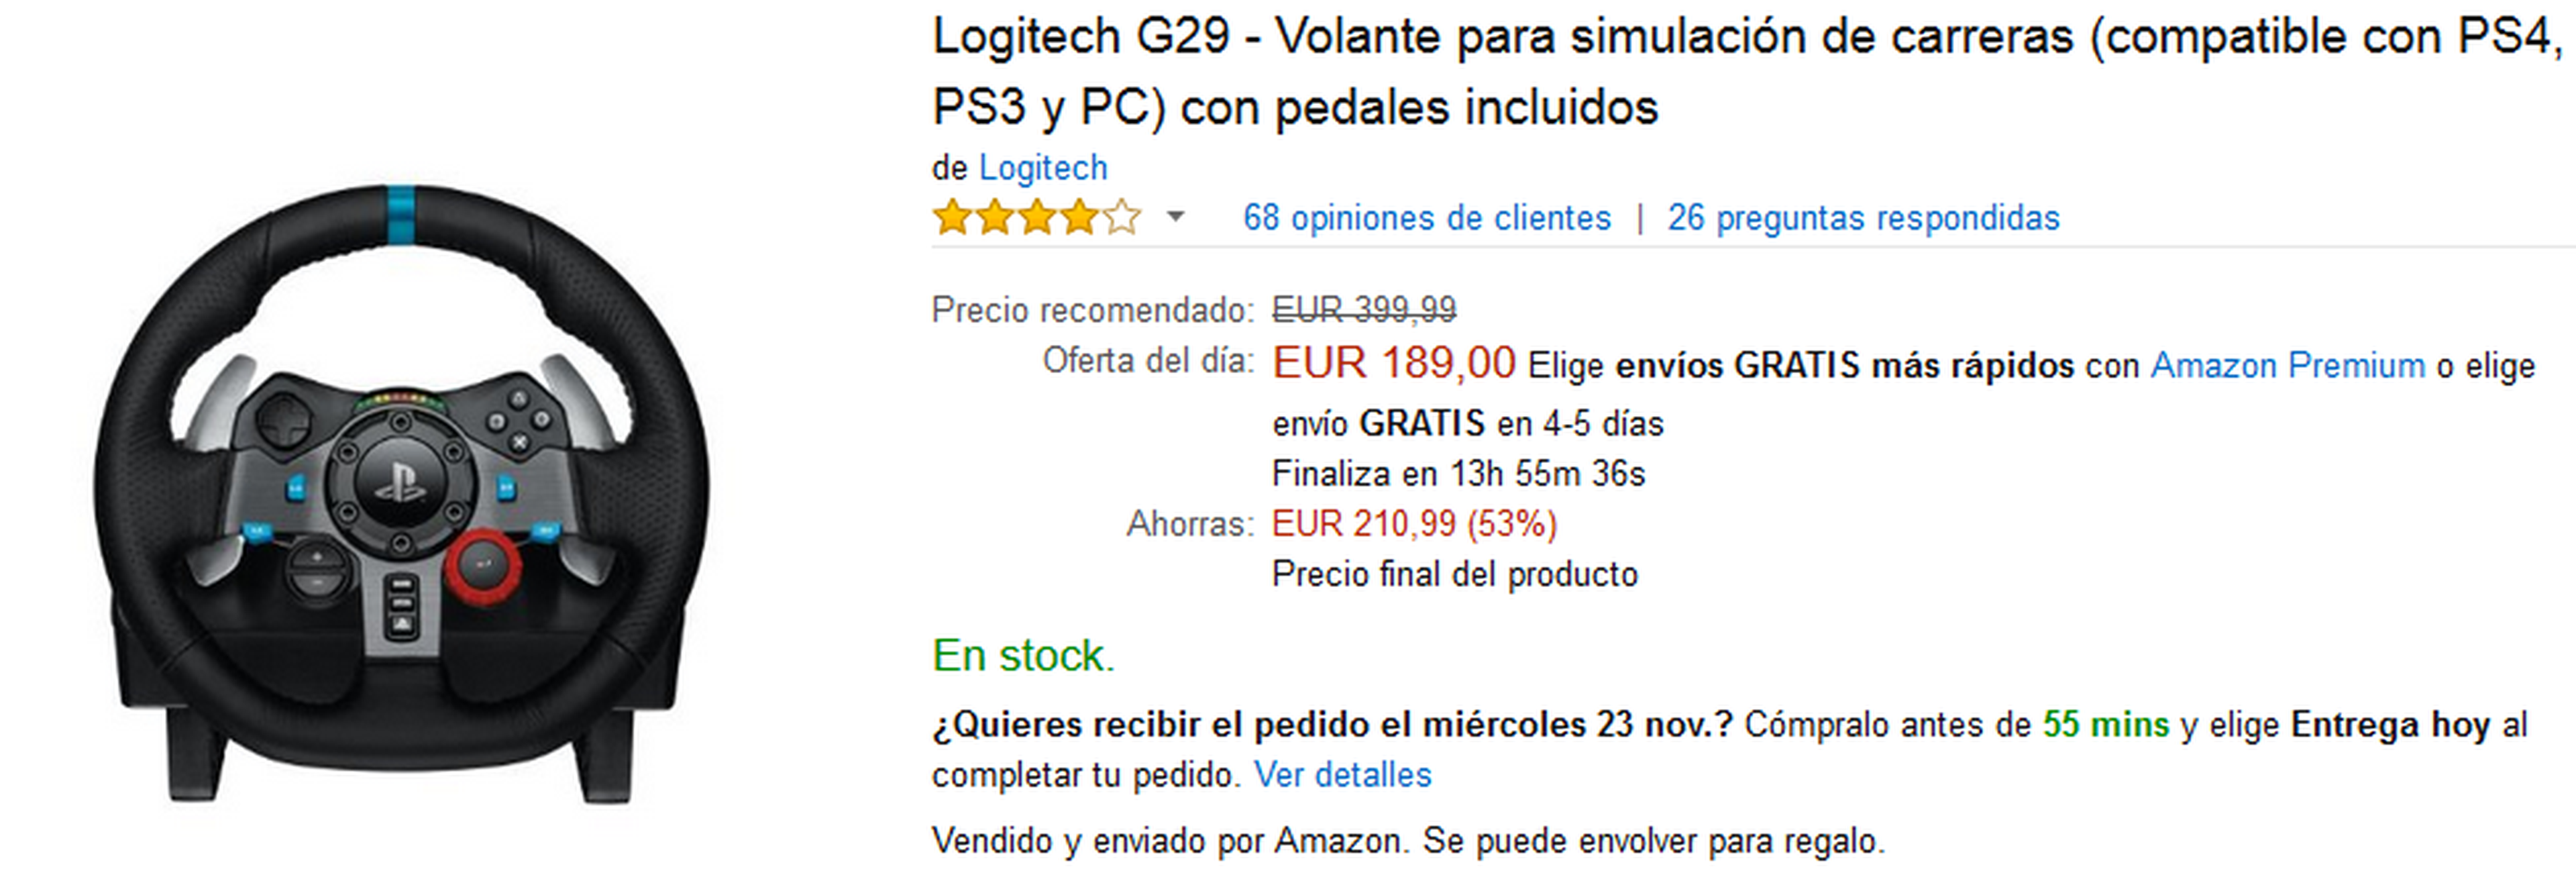 Volante Logitech G29 por 189 €